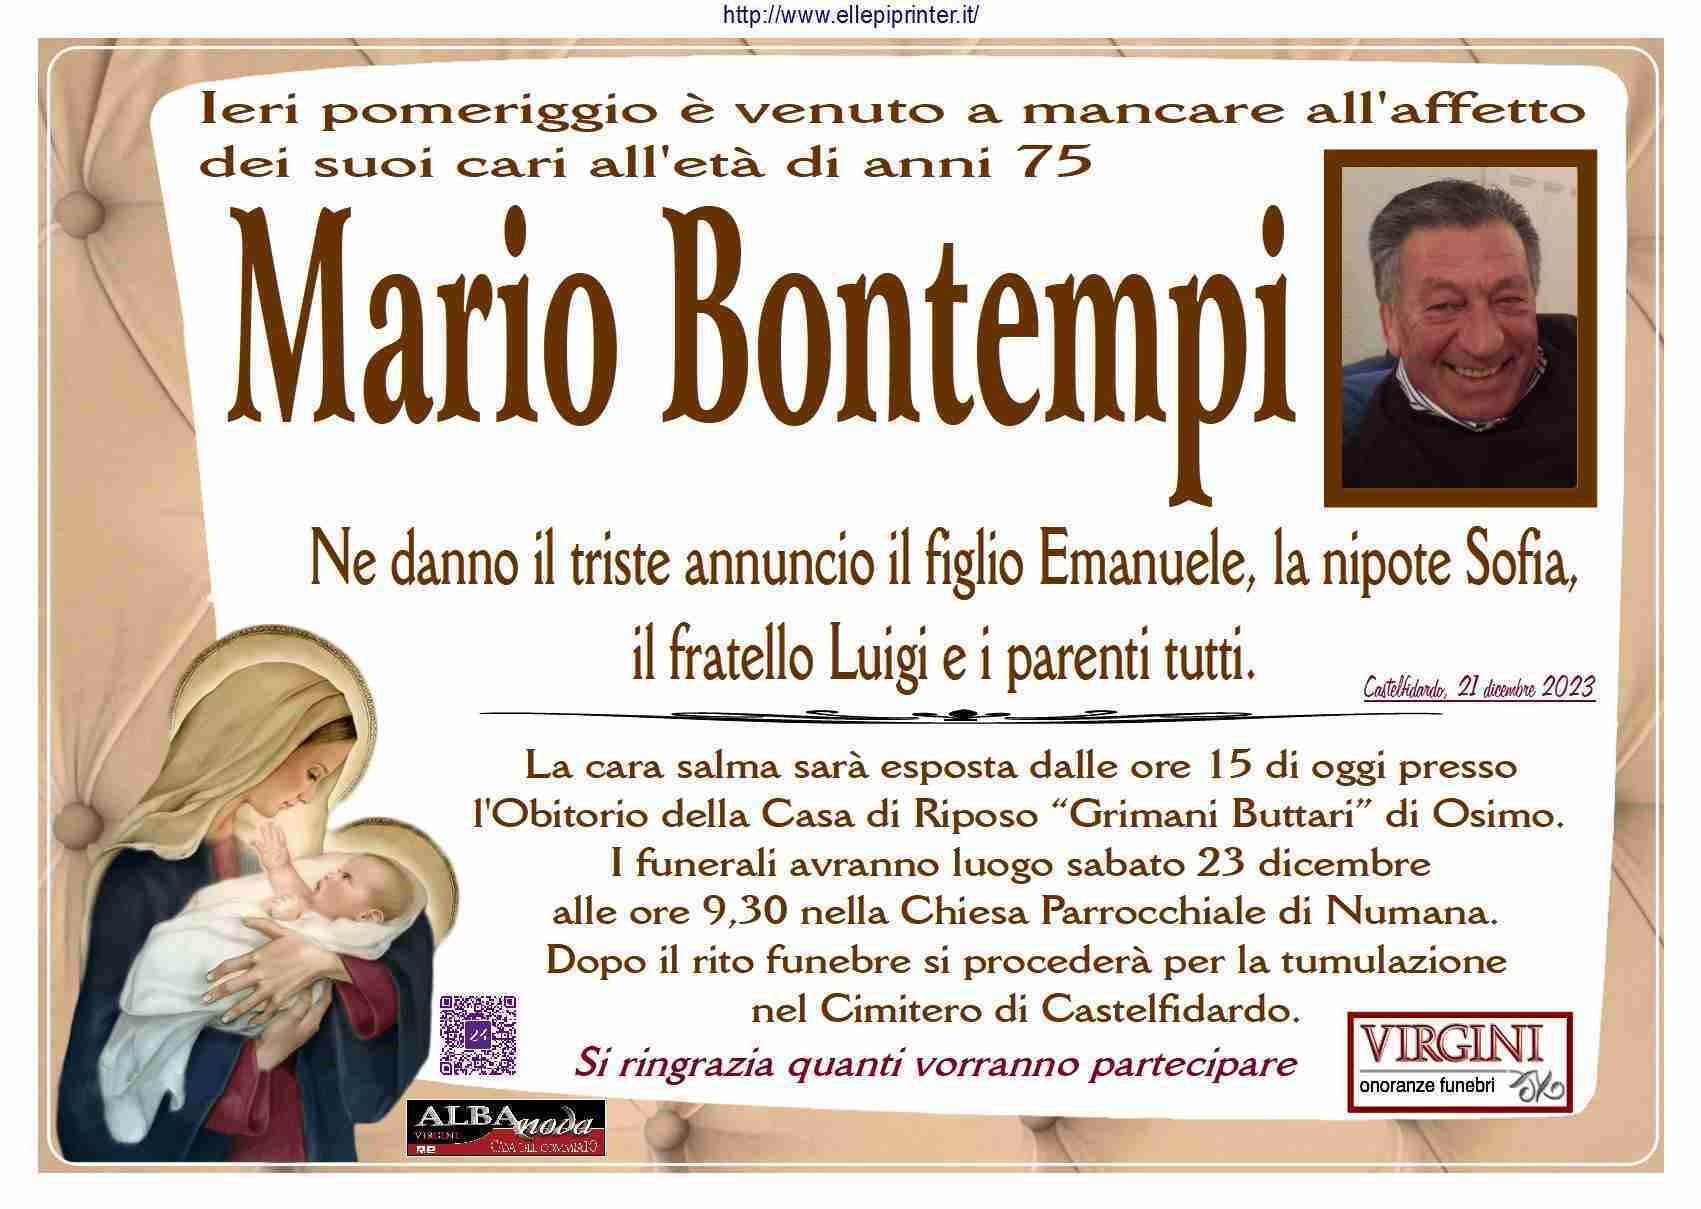 Mario Bontempi